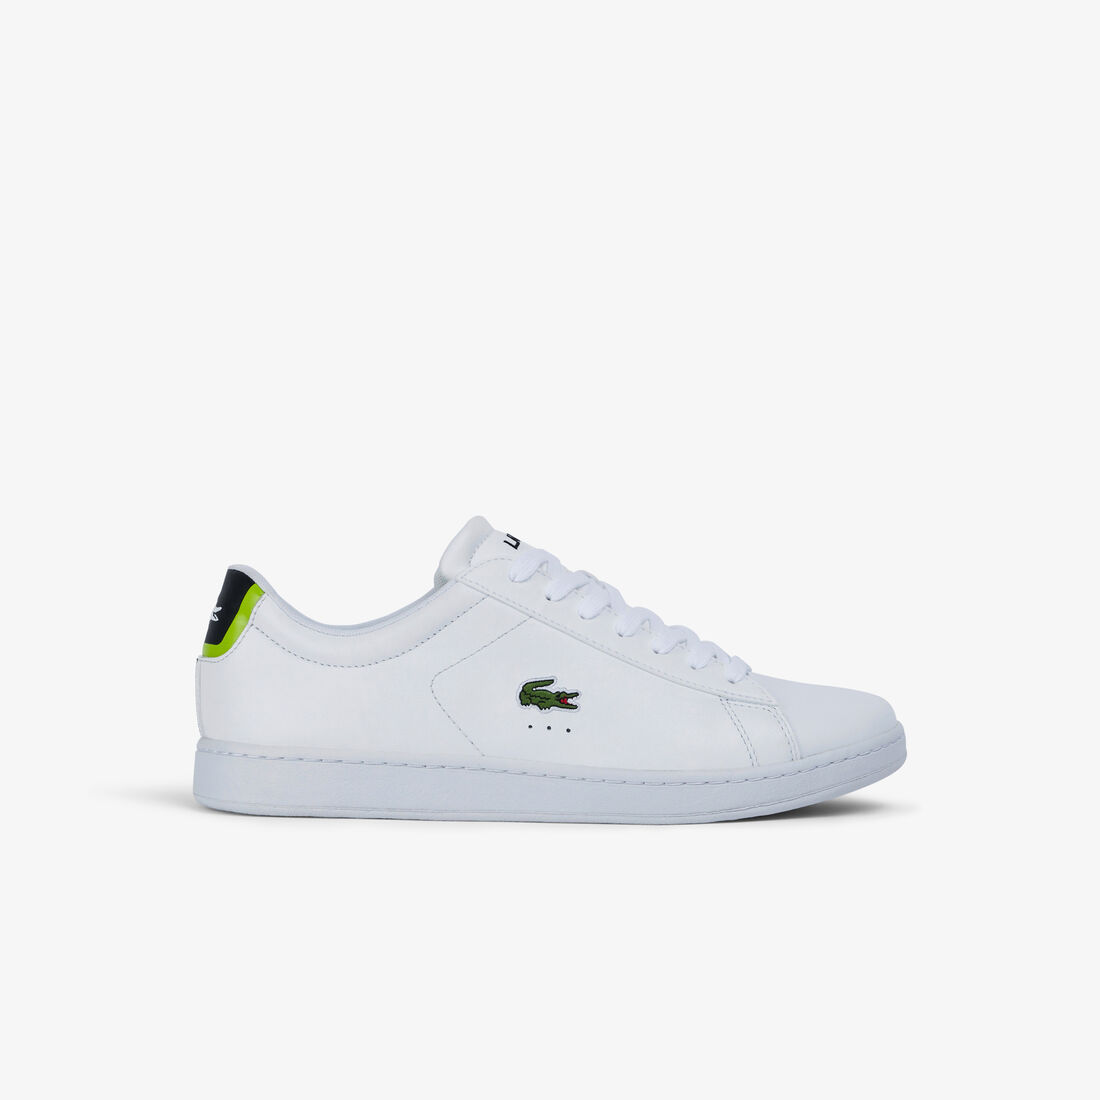 Lacoste Carnaby Leder Sneakers Herren Weiß Hellgrün | ODFI-05436